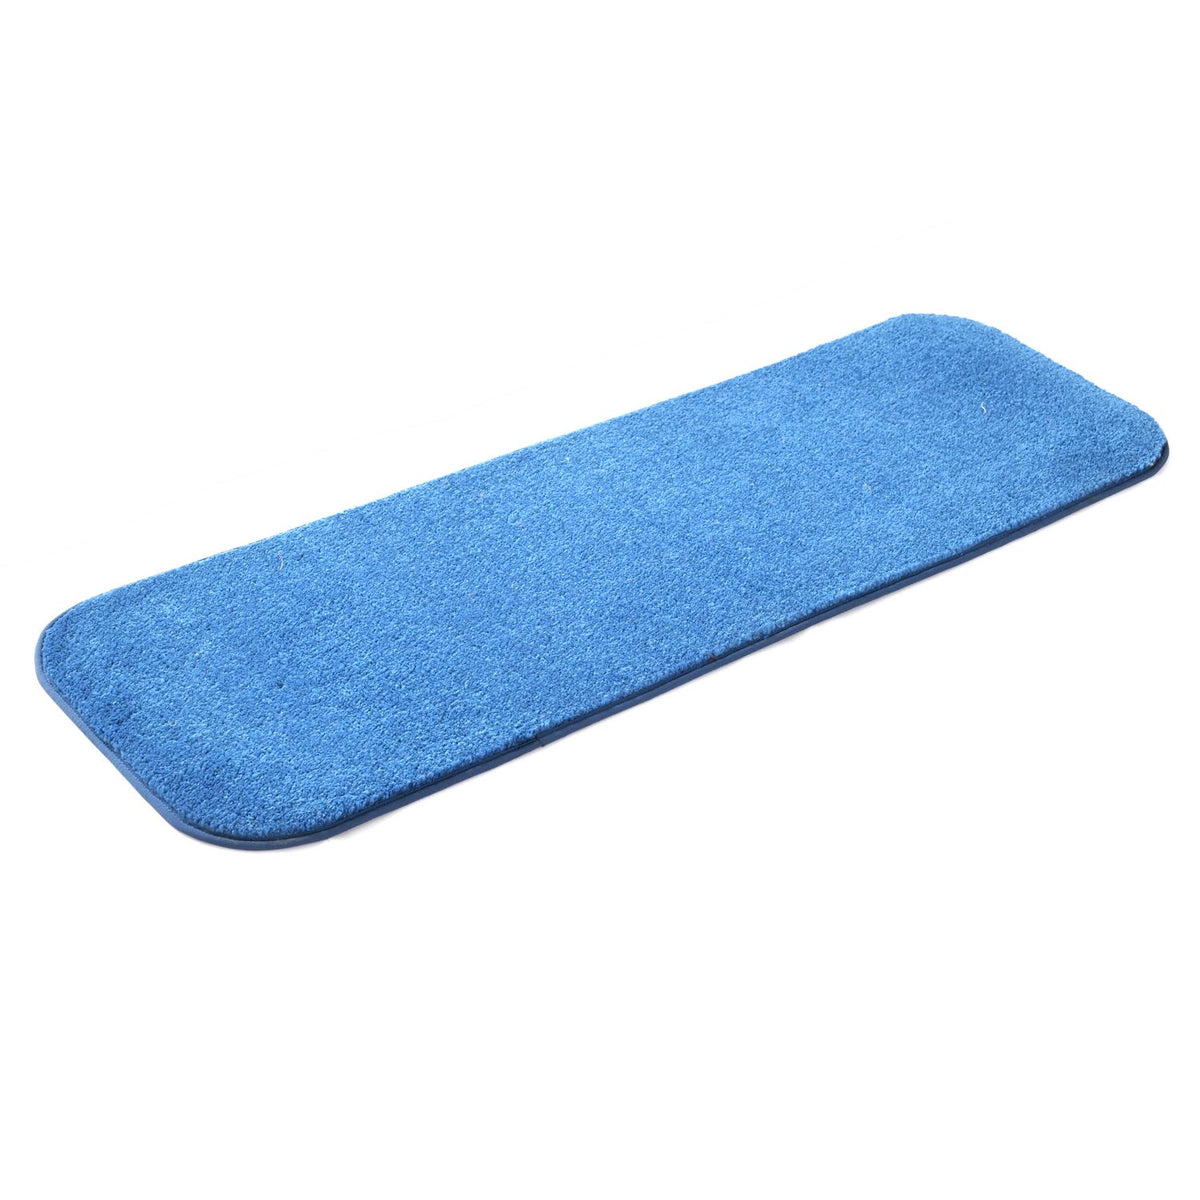 Elegant Soft Anti-Skid Soft Runner Mat - Bedside, Kitchen, Bathroom Entrance - Blue , 40 cm x 120 cm